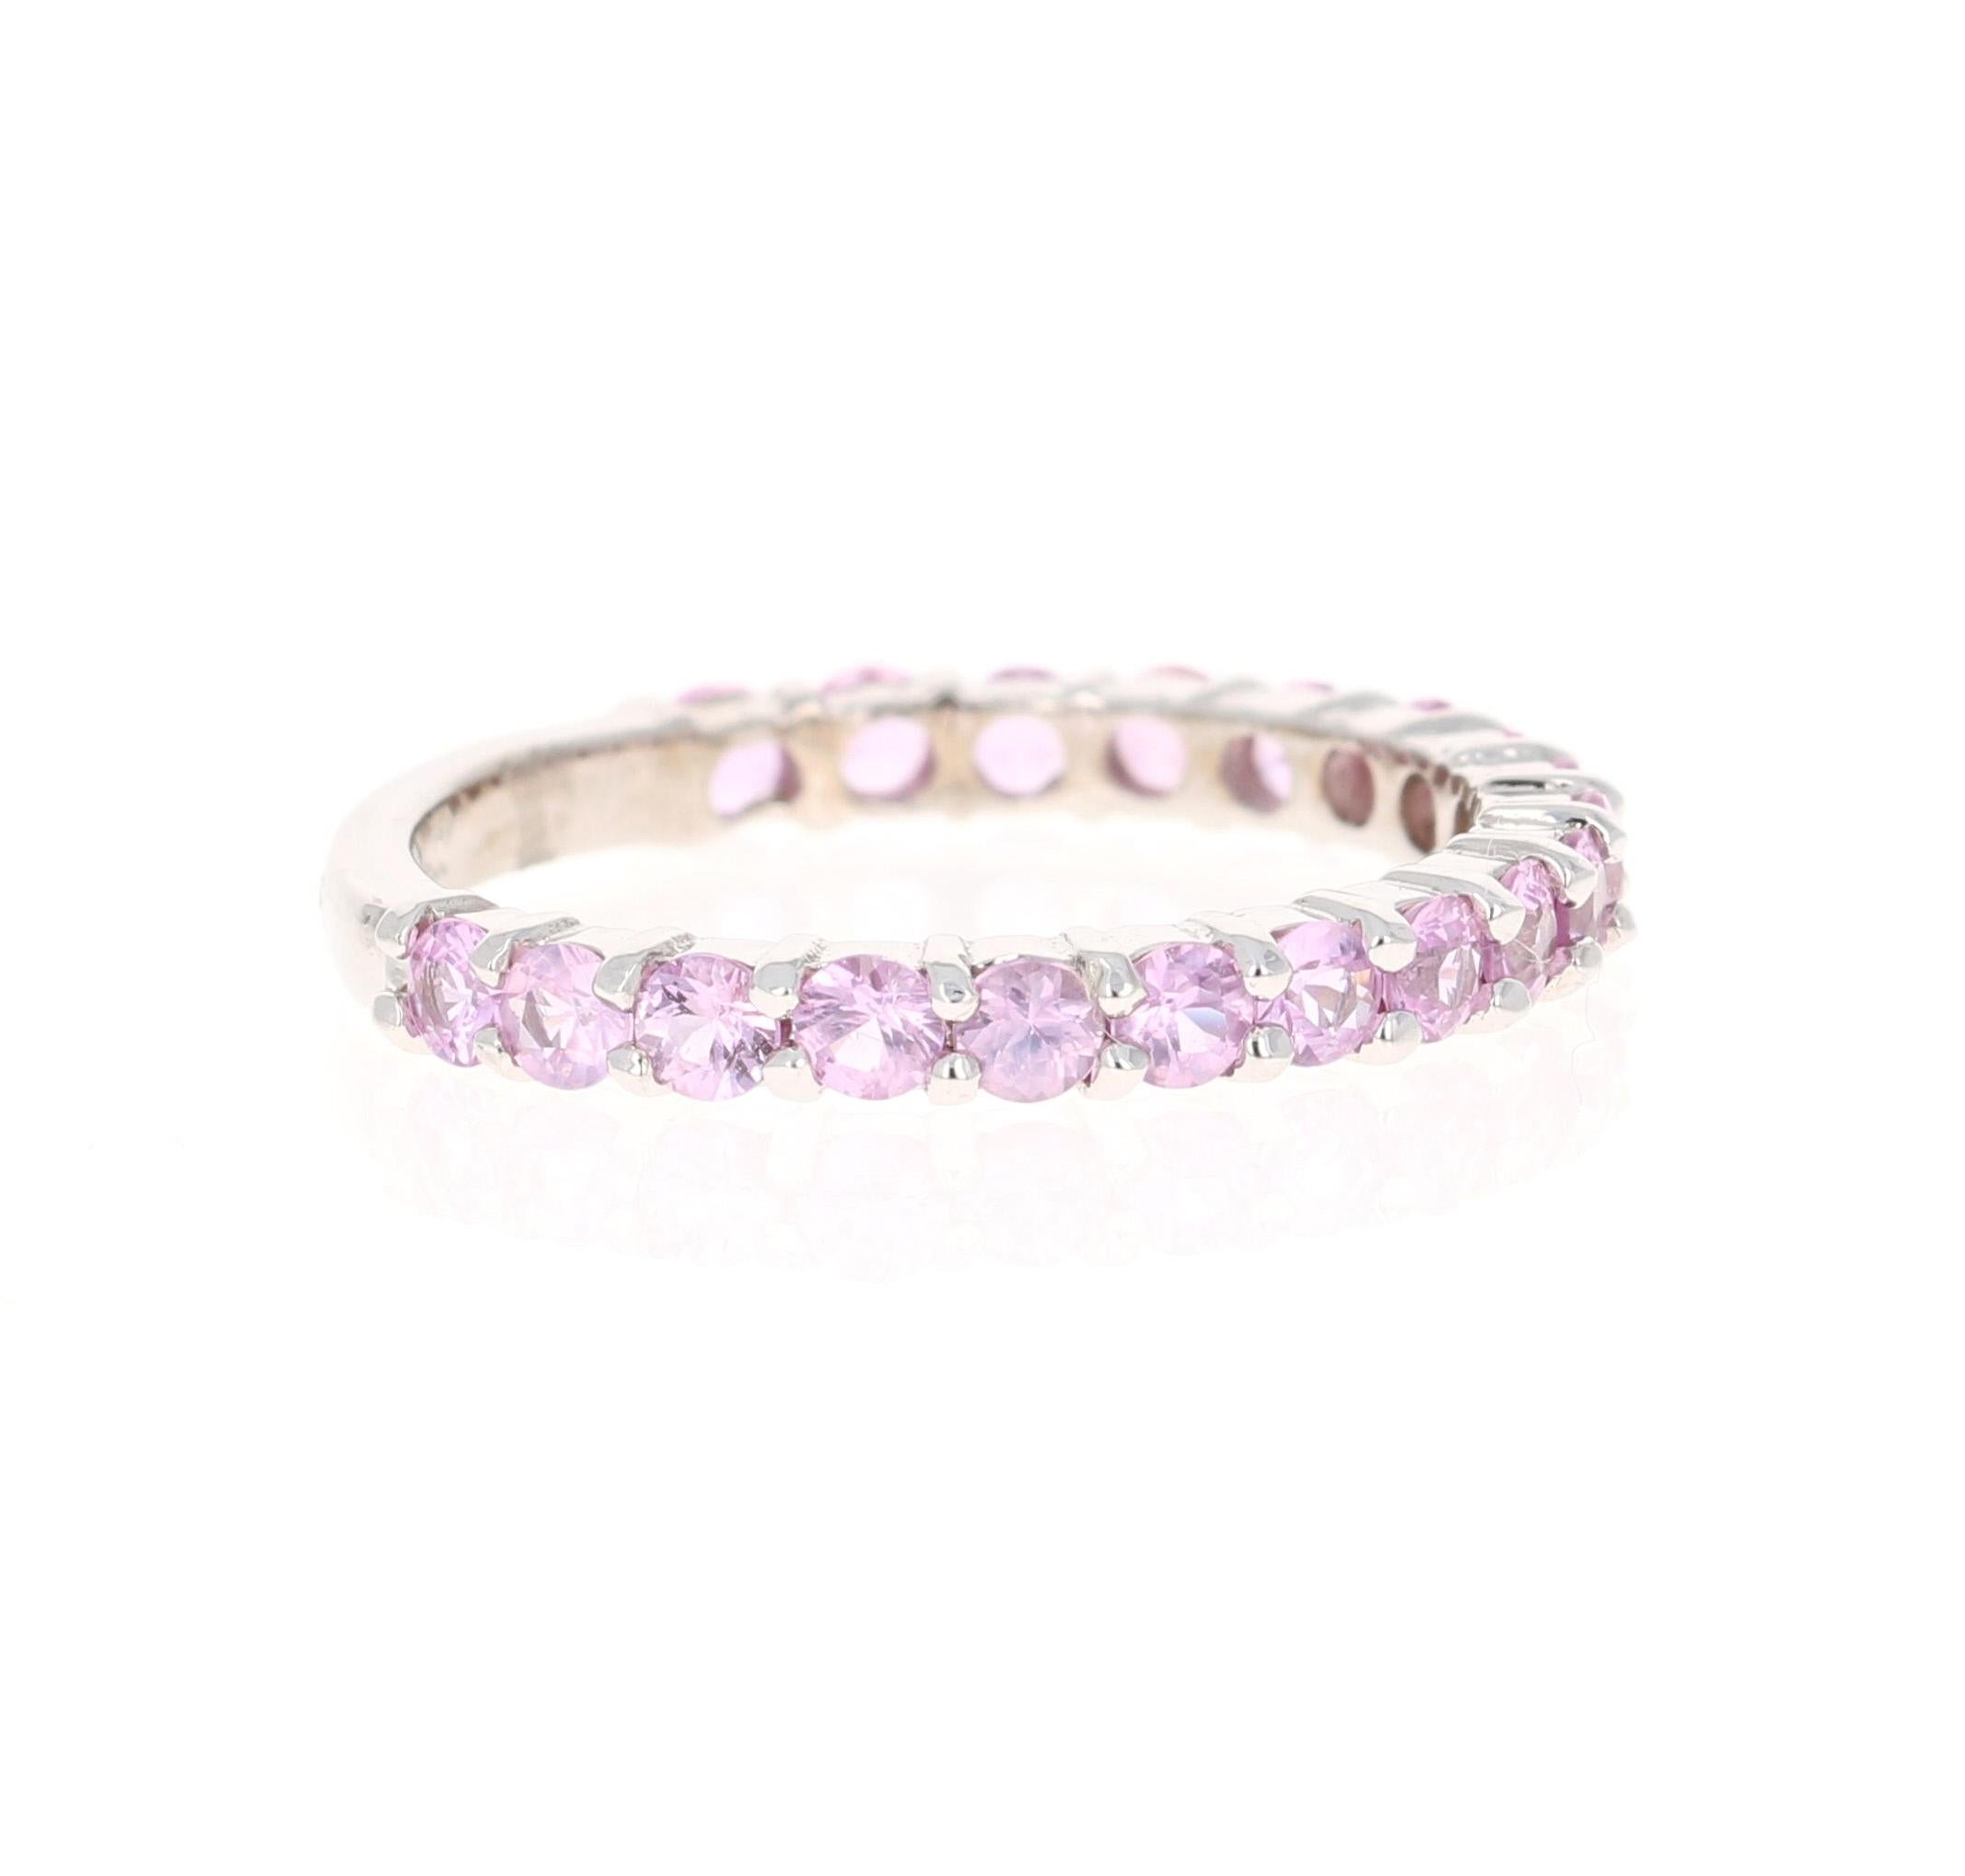 Dieser Ring hat 19 rosa Saphire mit einem Gewicht von 1,41 Karat. 

Gefertigt aus 14 Karat Weißgold und wiegt etwa 2,1 Gramm 

Der Ring hat die Größe 7 und kann ohne Aufpreis in der Größe verändert werden!